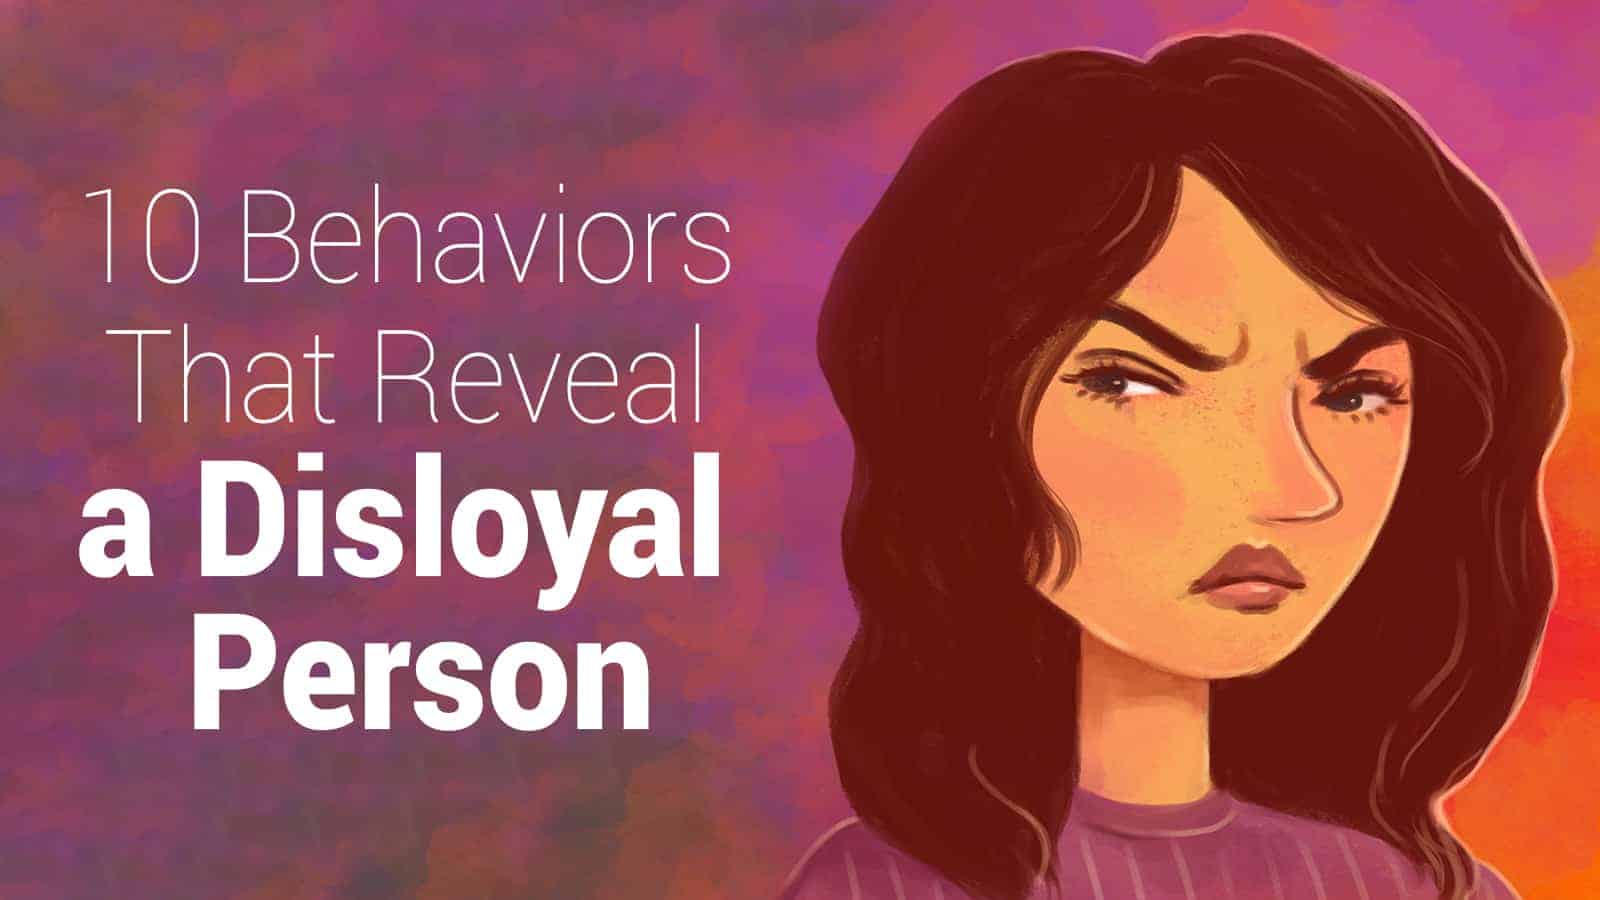 10 Behaviors That Reveal a Disloyal Person